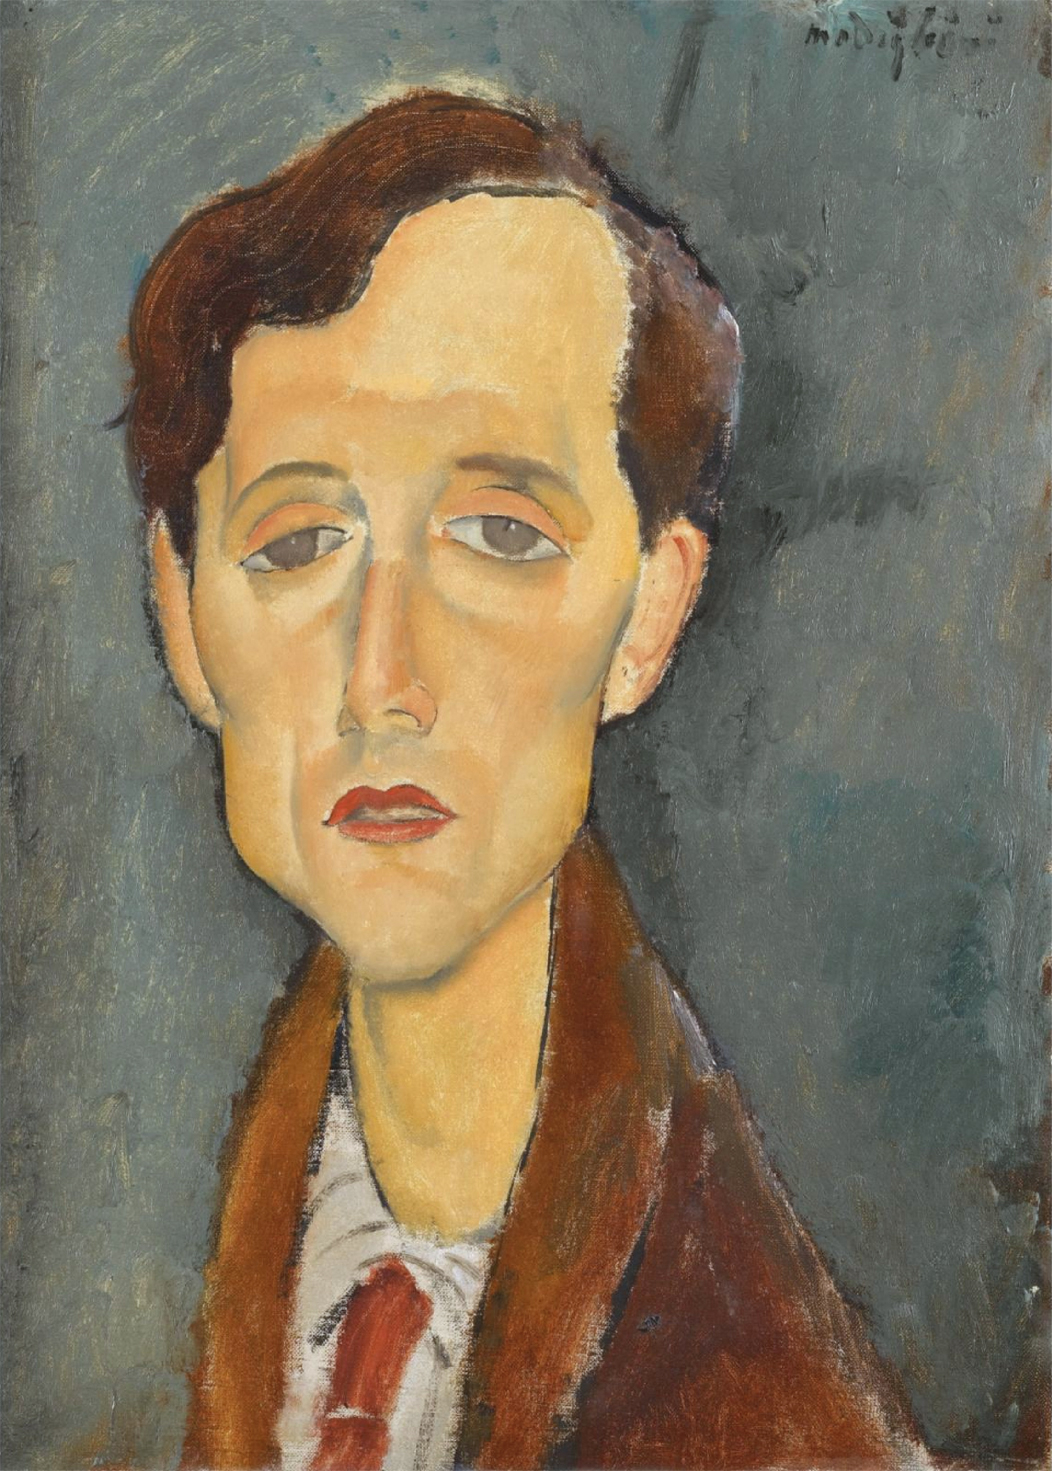 Frans Hellens by Amedeo Modigliani - 1919 - 46 x 34cm collezione privata